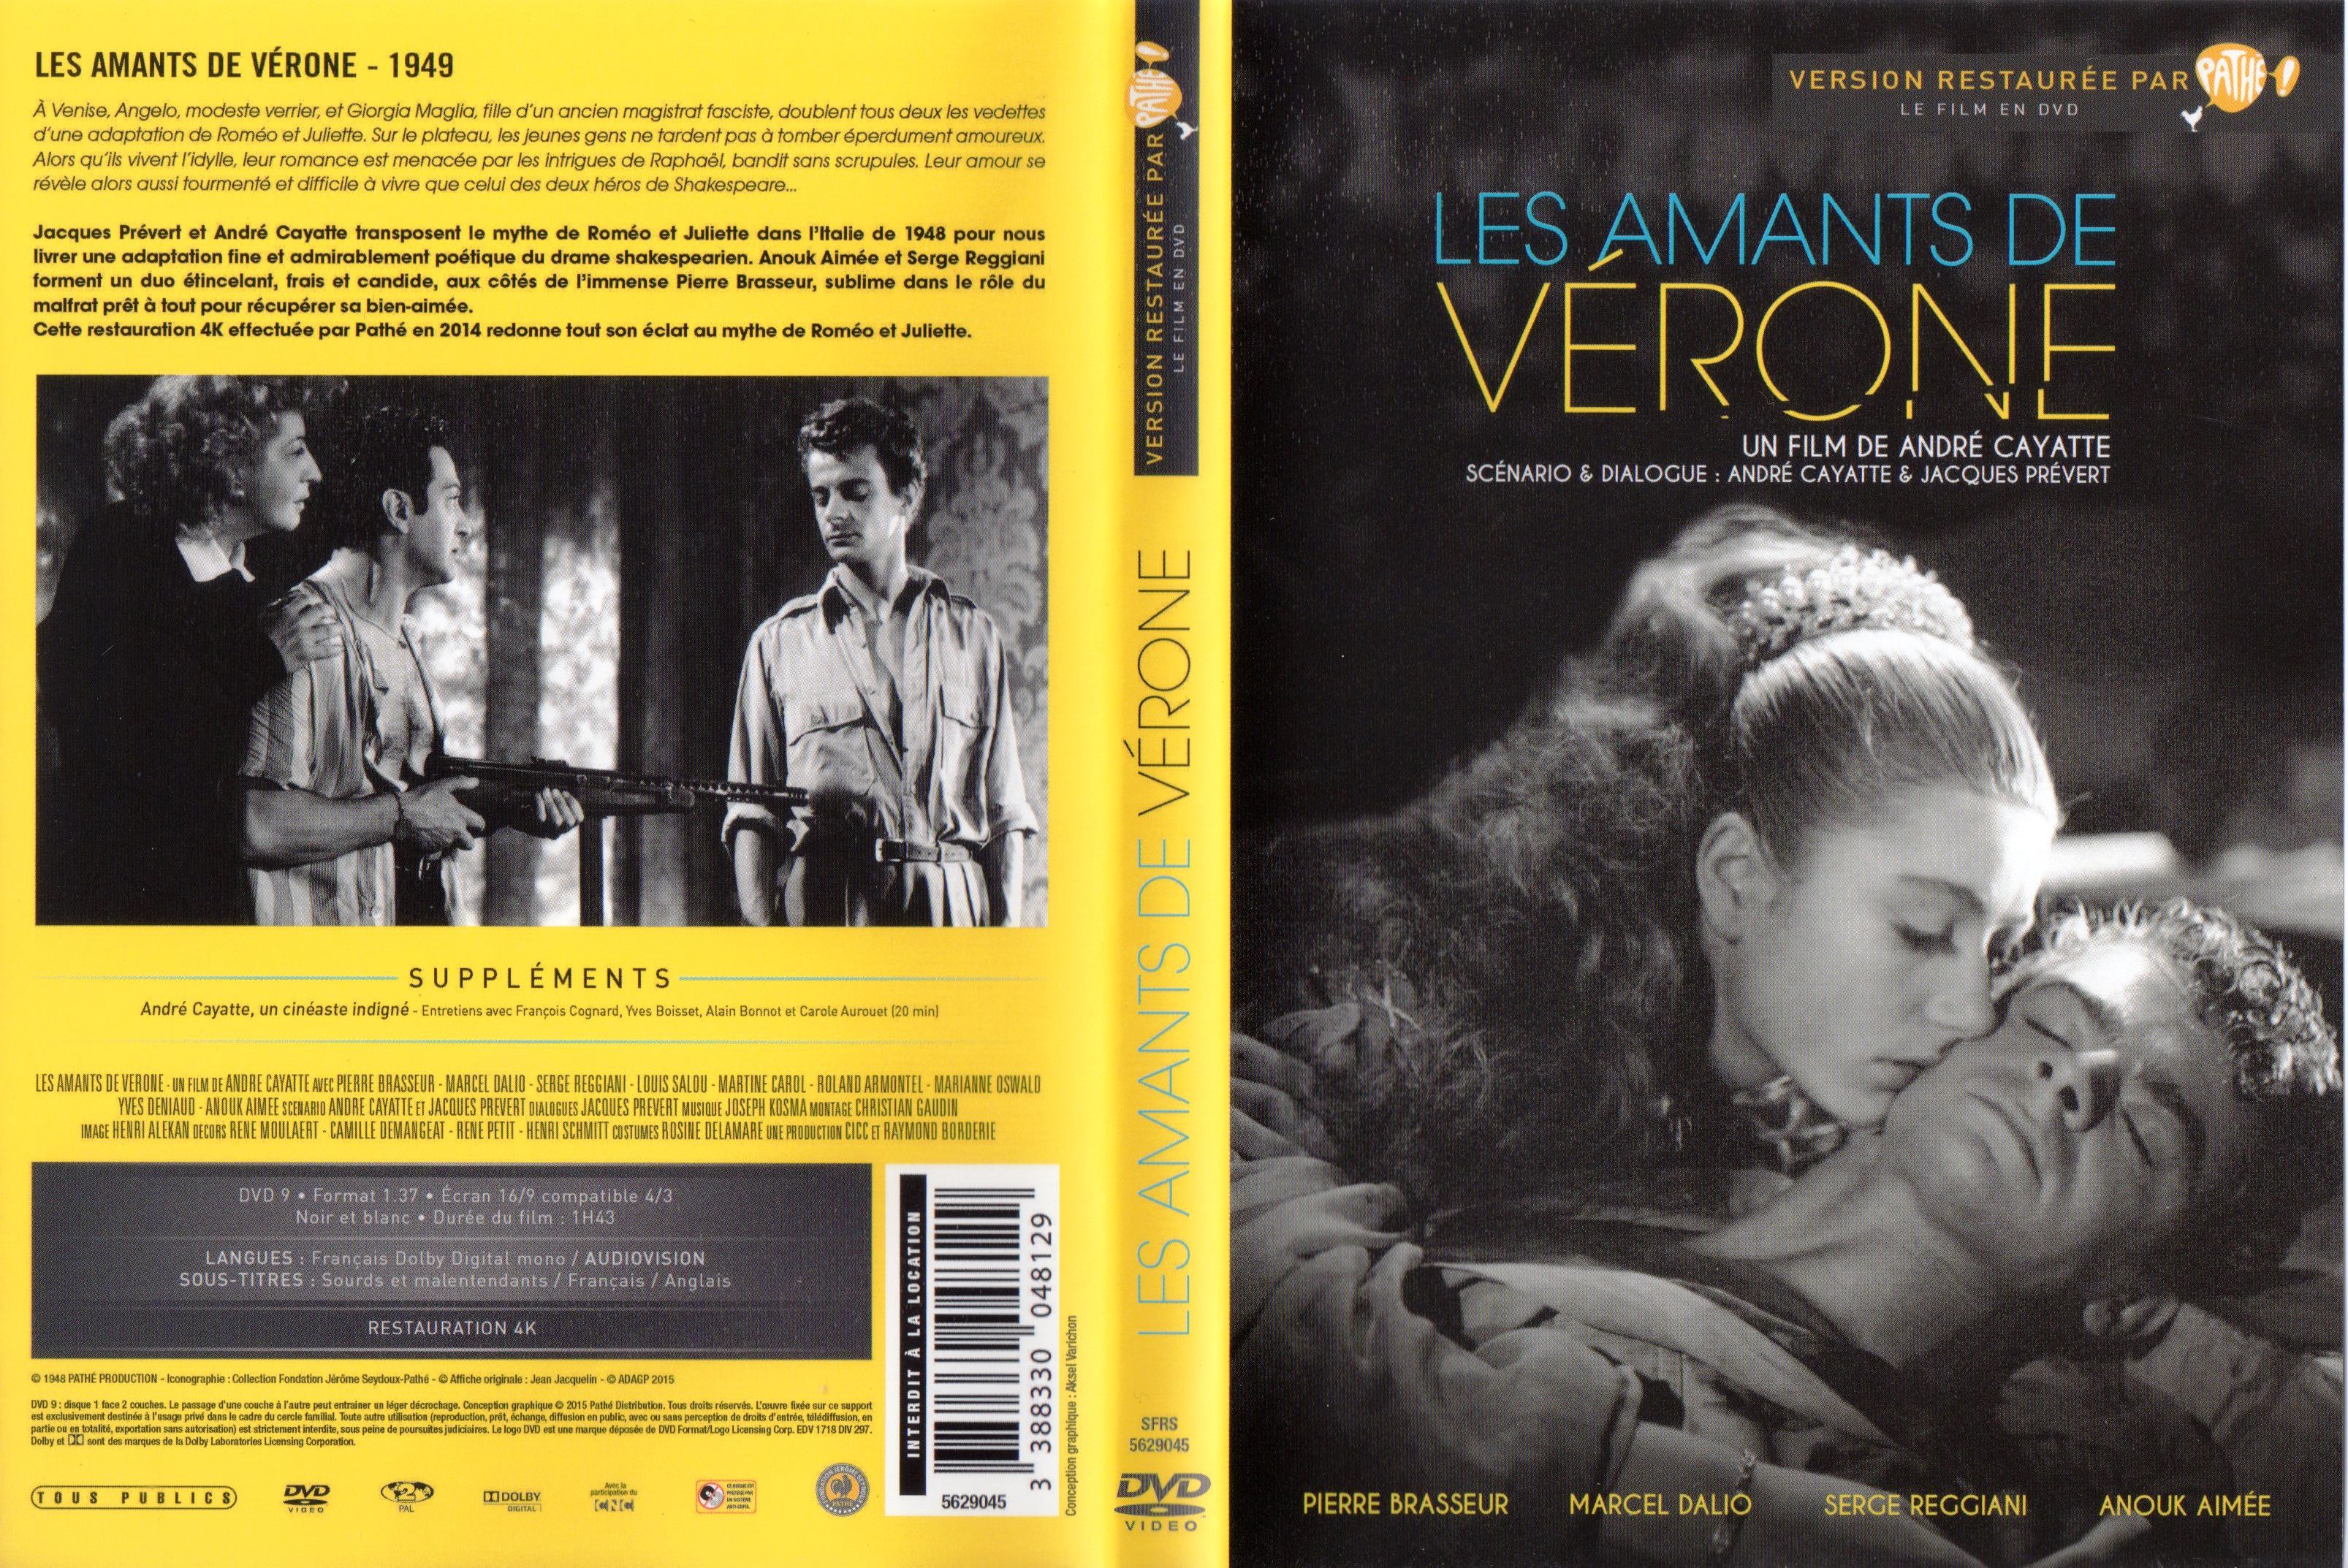 Jaquette DVD Les Amants de Vrone